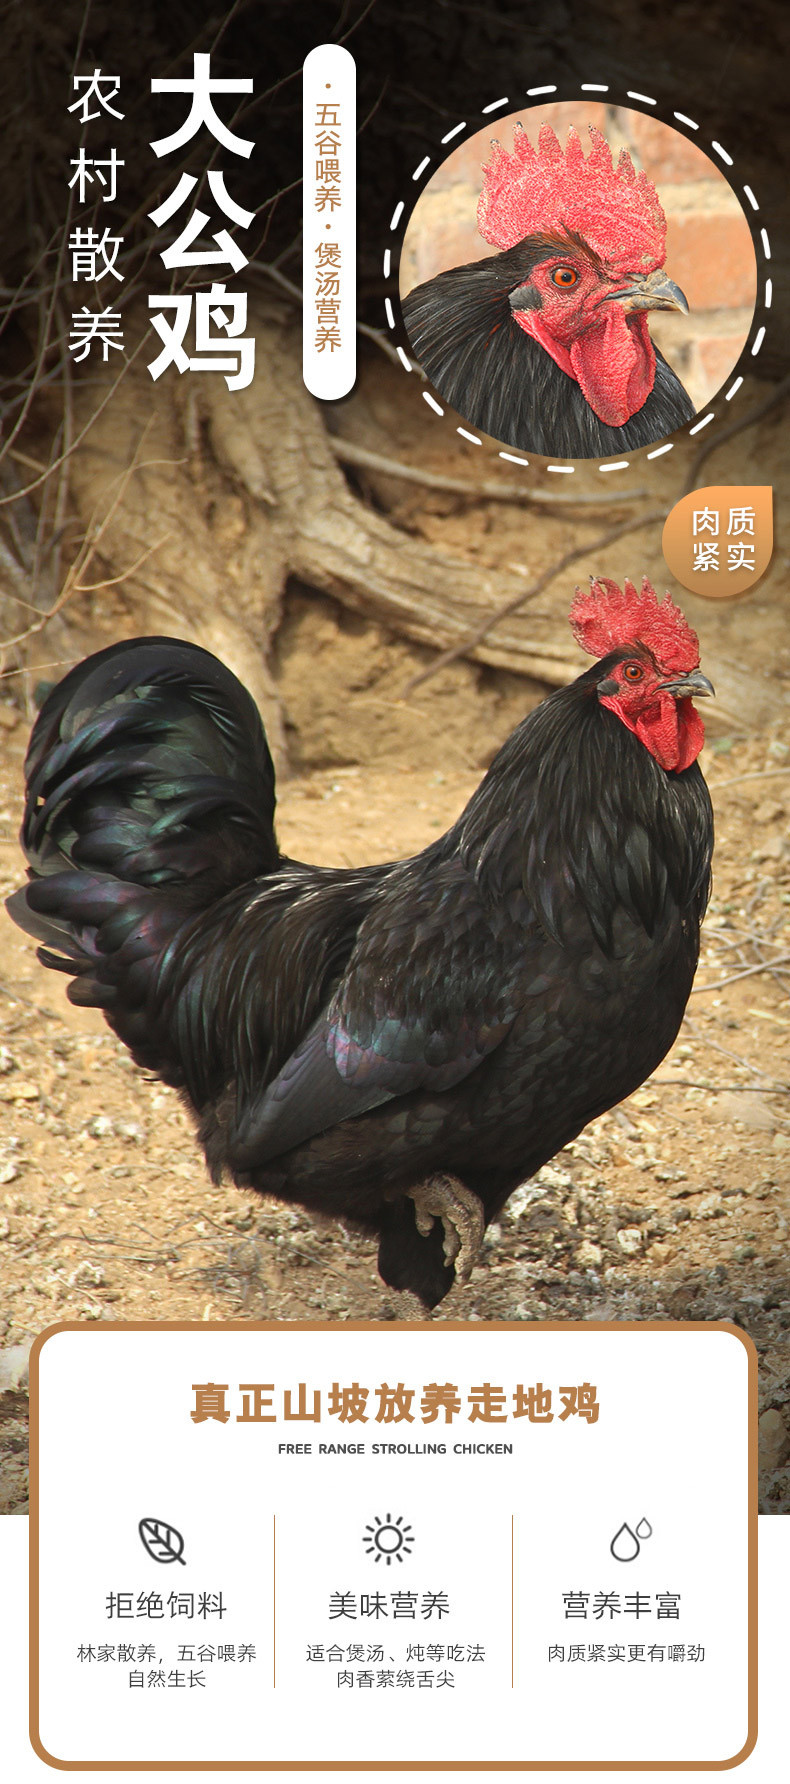  【北京优农】密之蓝天农家散养大公鸡1只  净重约3.5斤  邮政农品